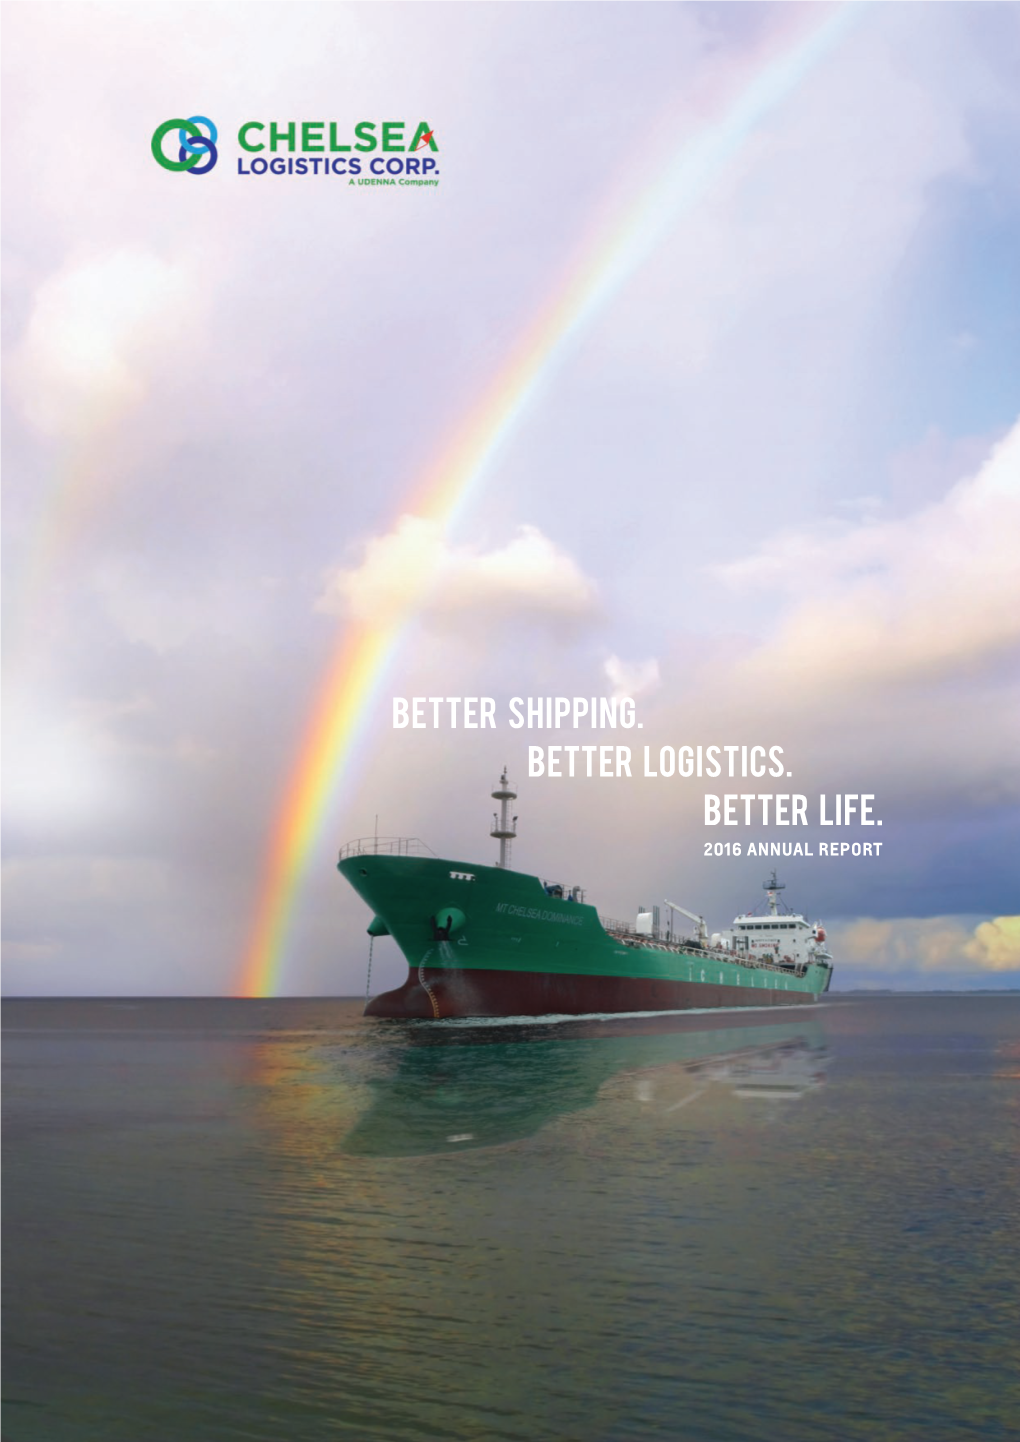 Better Life. Better Logistics. Better Shipping